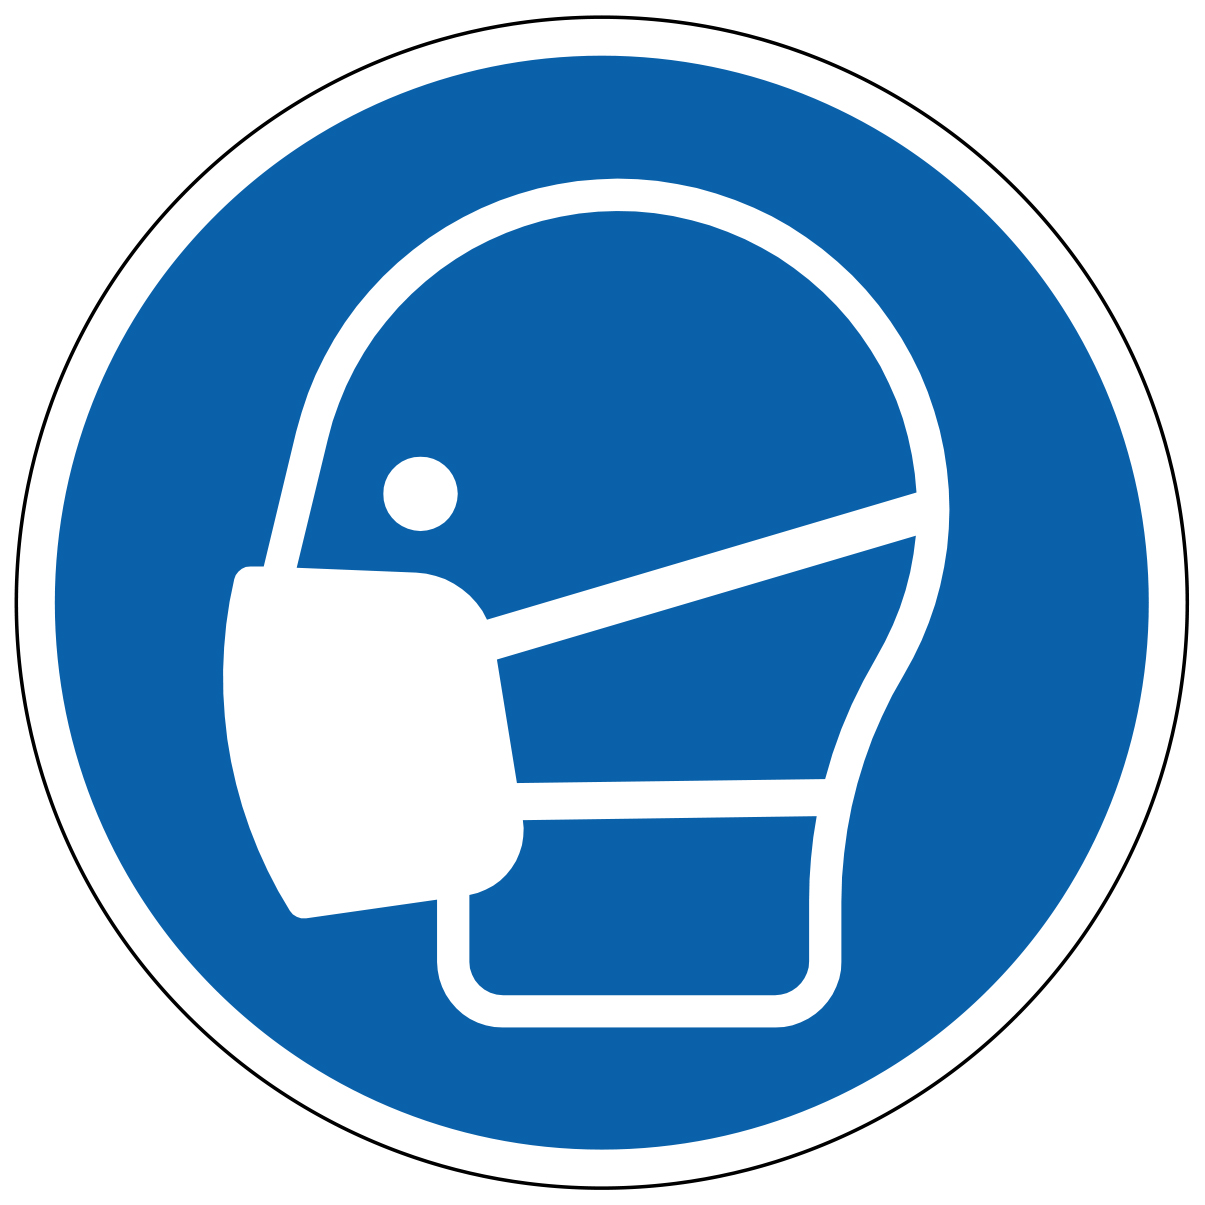 Masque obligatoire - étiquettes et panneaux d'obligation et de consigne